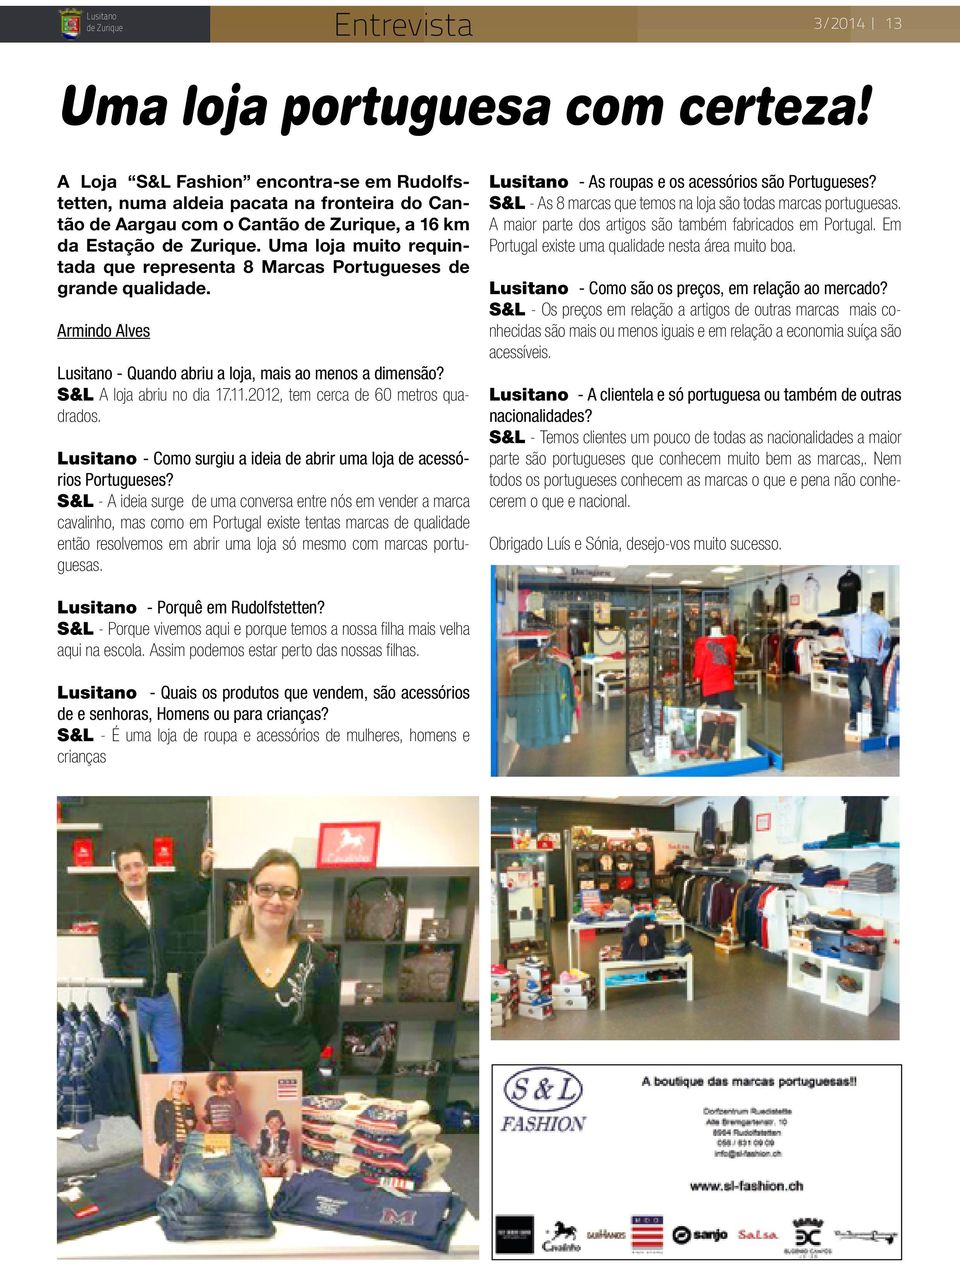 2012, tem cerca de 60 metros quadrados. Lusitano - Como surgiu a ideia de abrir uma loja de acessórios Portugueses?